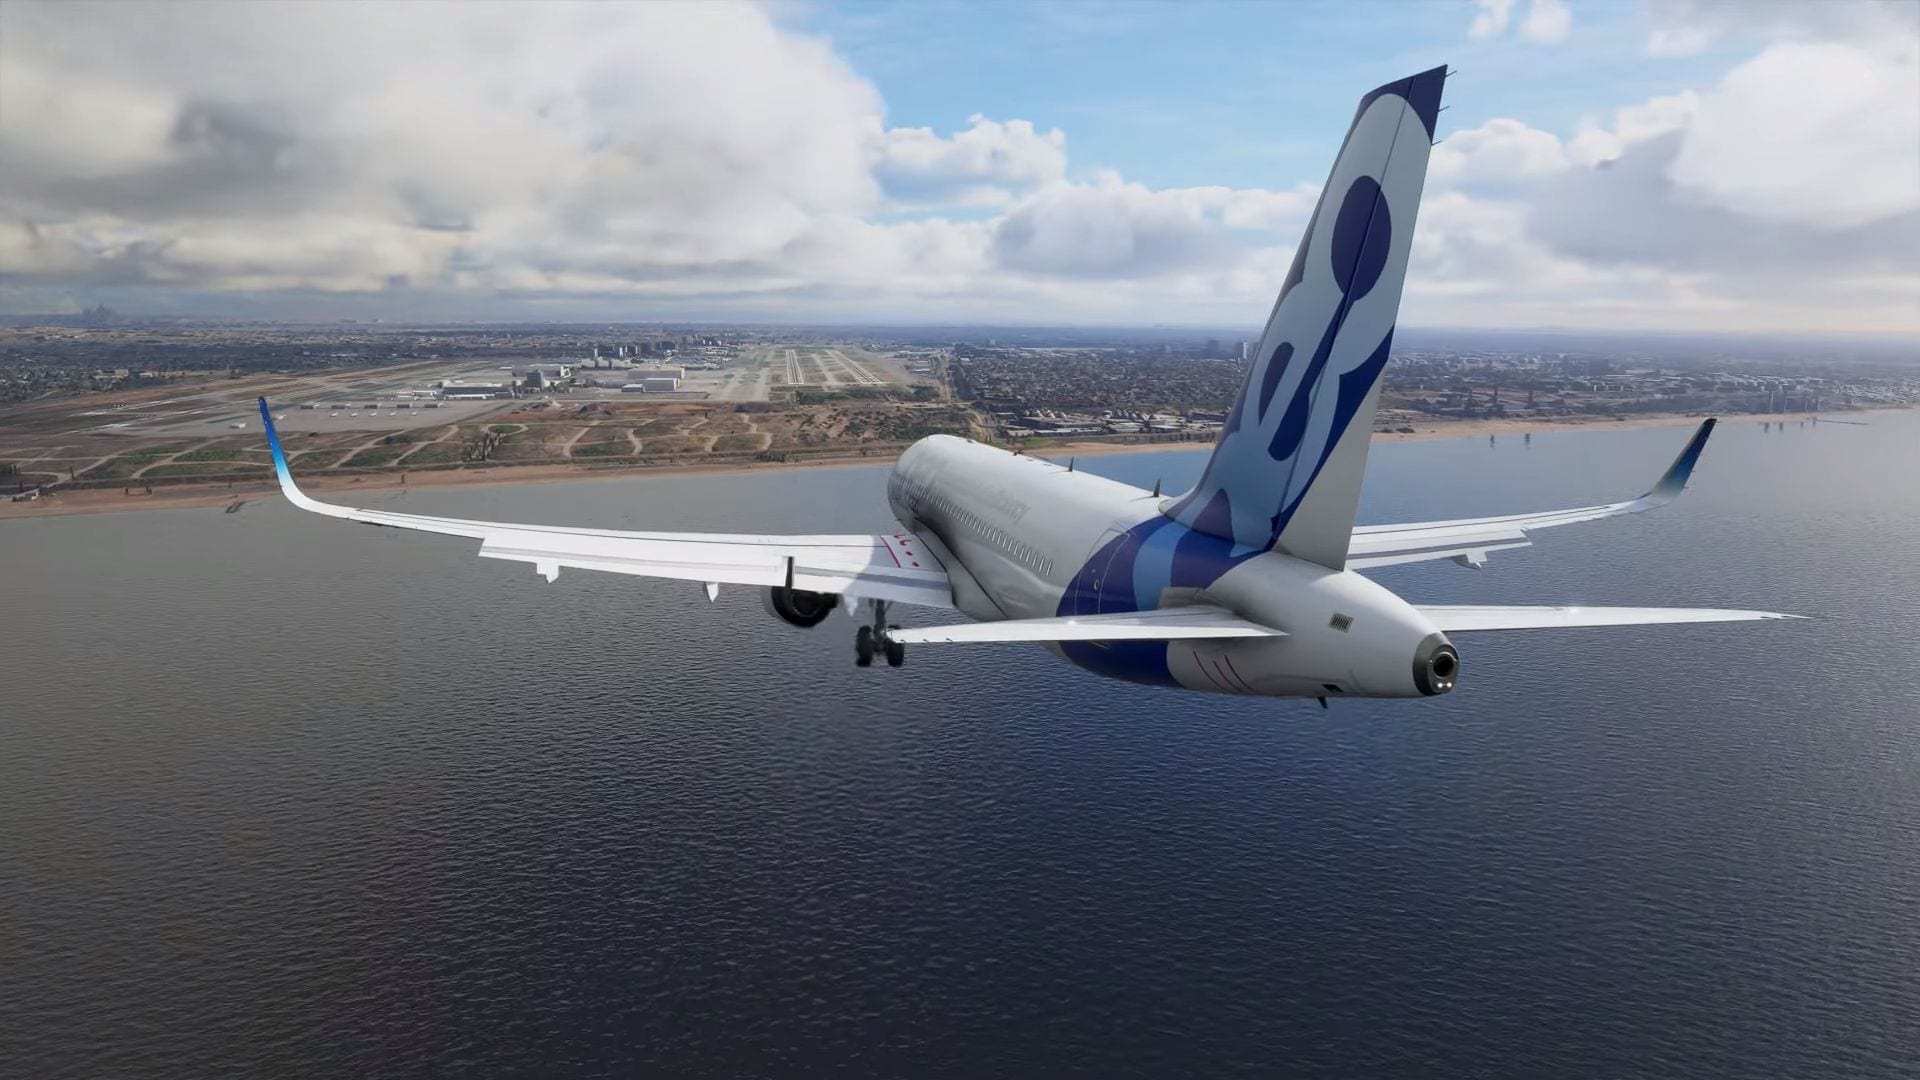 Microsoft Flight Simulator: requisitos mínimos y recomendados para volar en  PC - Meristation